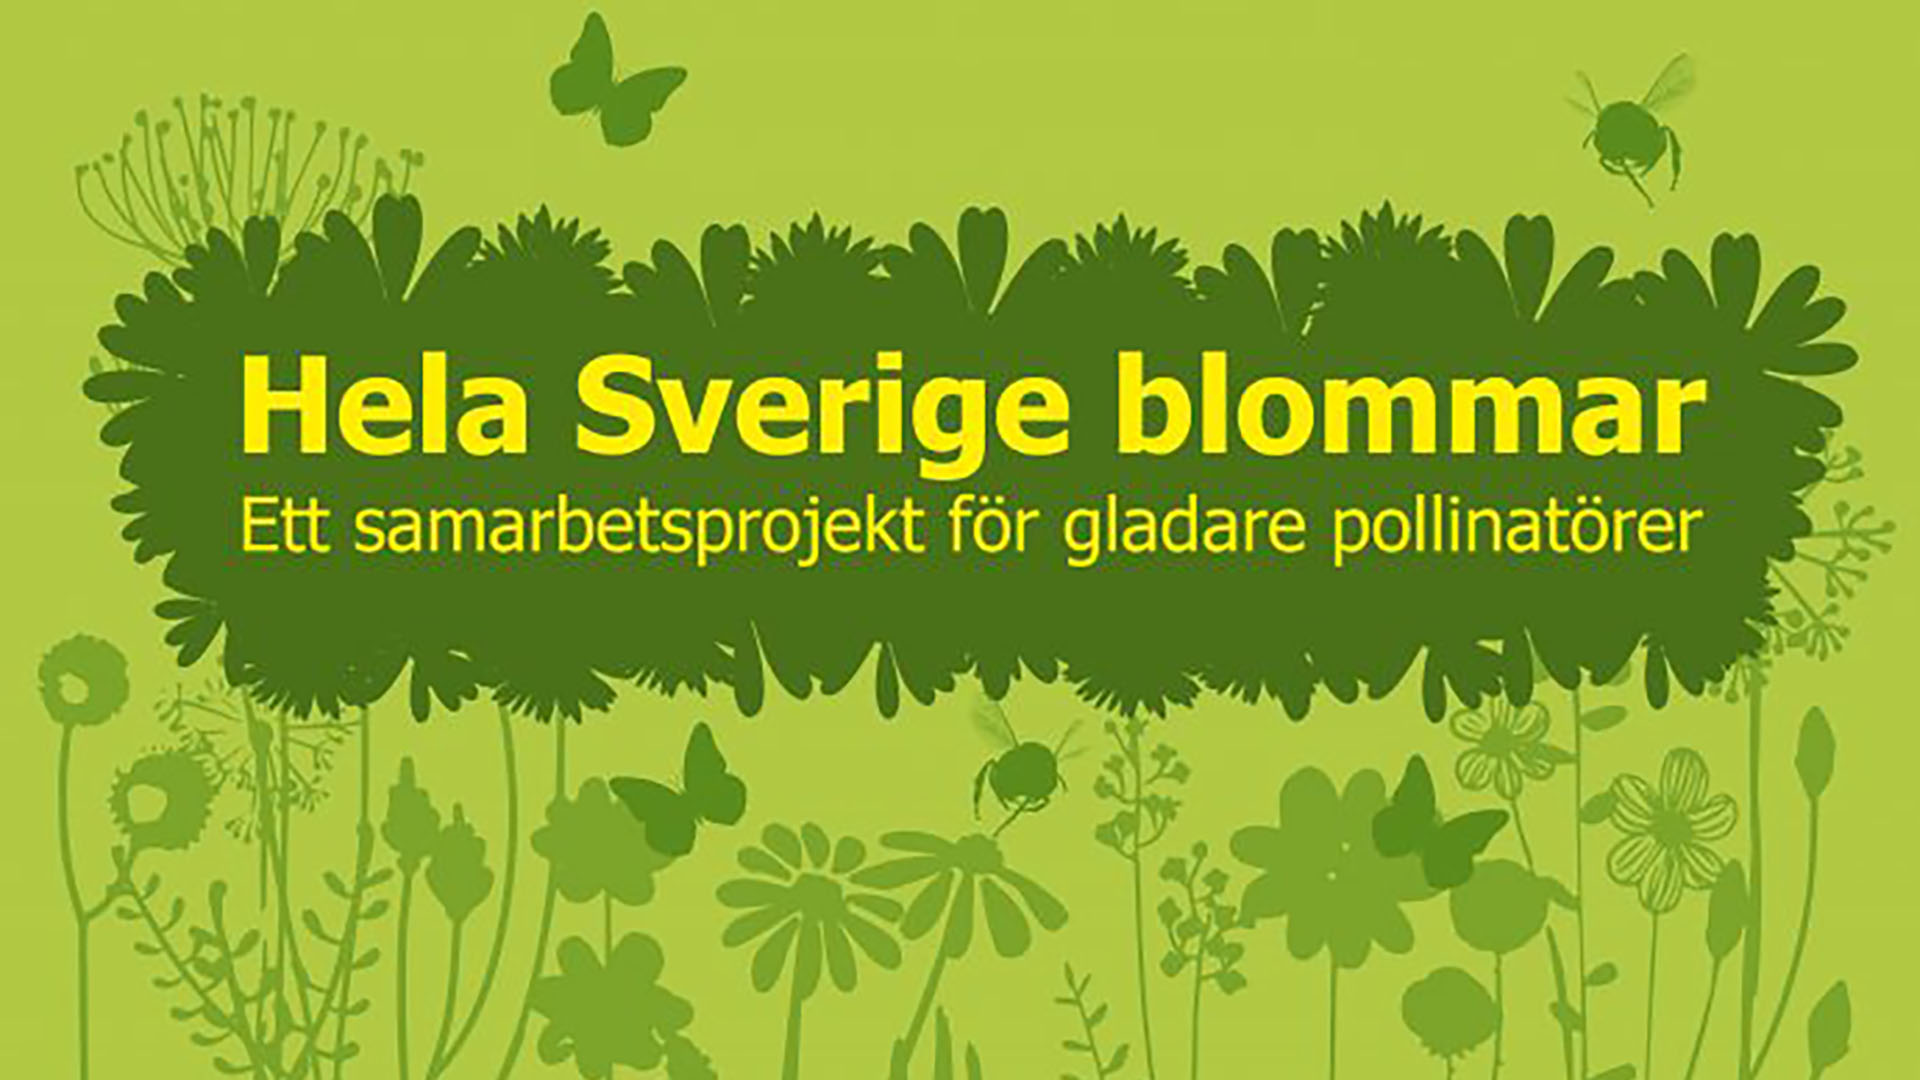 Ljusgrön bild med mörkare gröna blommor i siluett. Texten Hela Sverige blommar ett samarbete för gladare pollinatörer i gult.